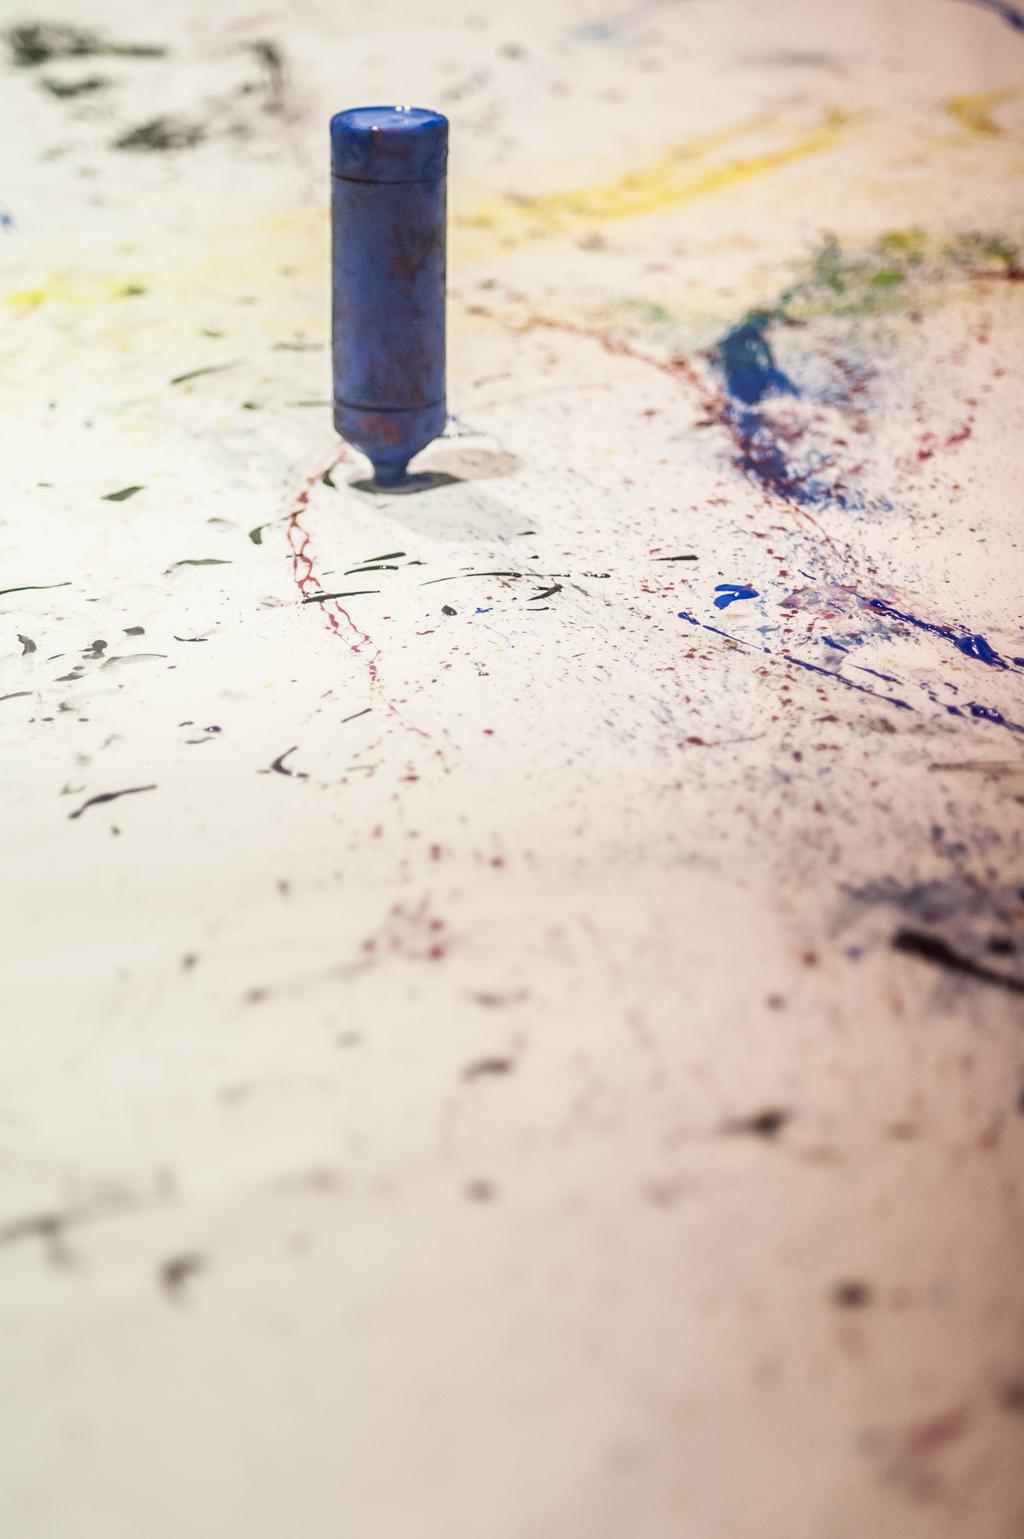 WAAR GAAN JULLIE NAAR KIJKEN? Camiel probeert het schilderij Blue Poles van zijn grote voorbeeld Jackson Pollock na te maken. Maar hoe krijgt hij de juiste vlek op de juiste plek?